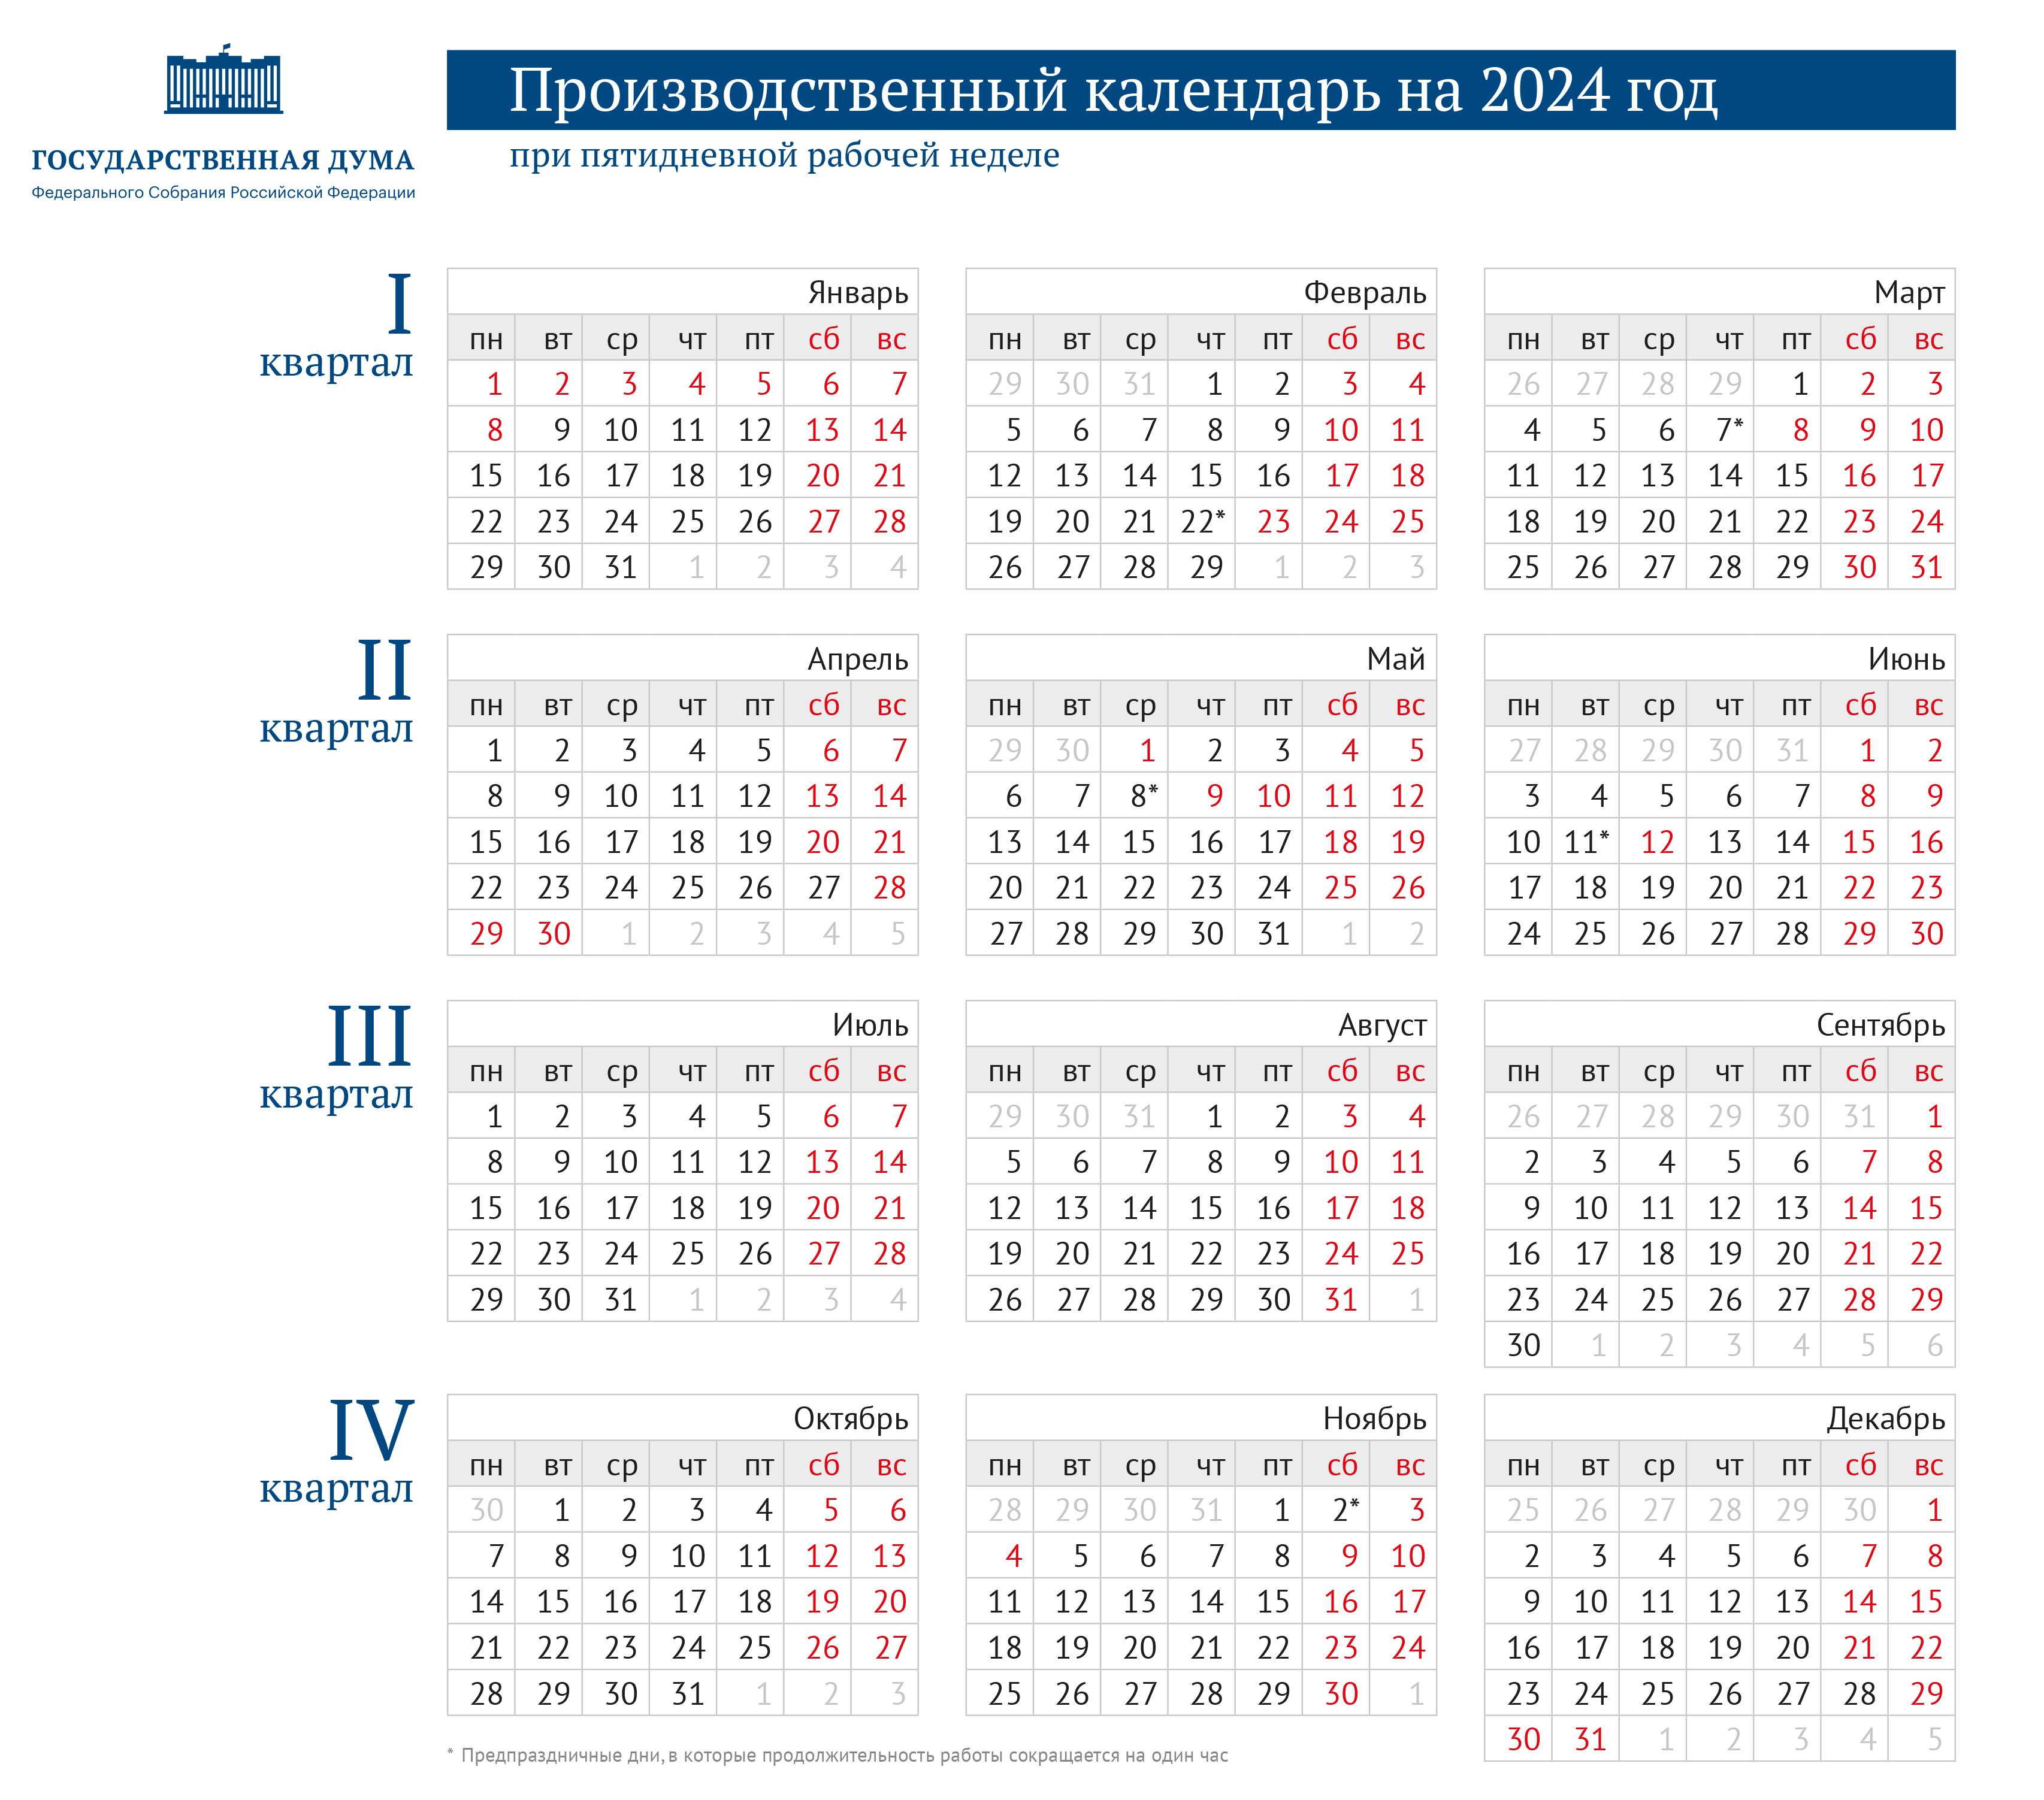 Правительство утвердило праздничные и выходные дни на 2024 год